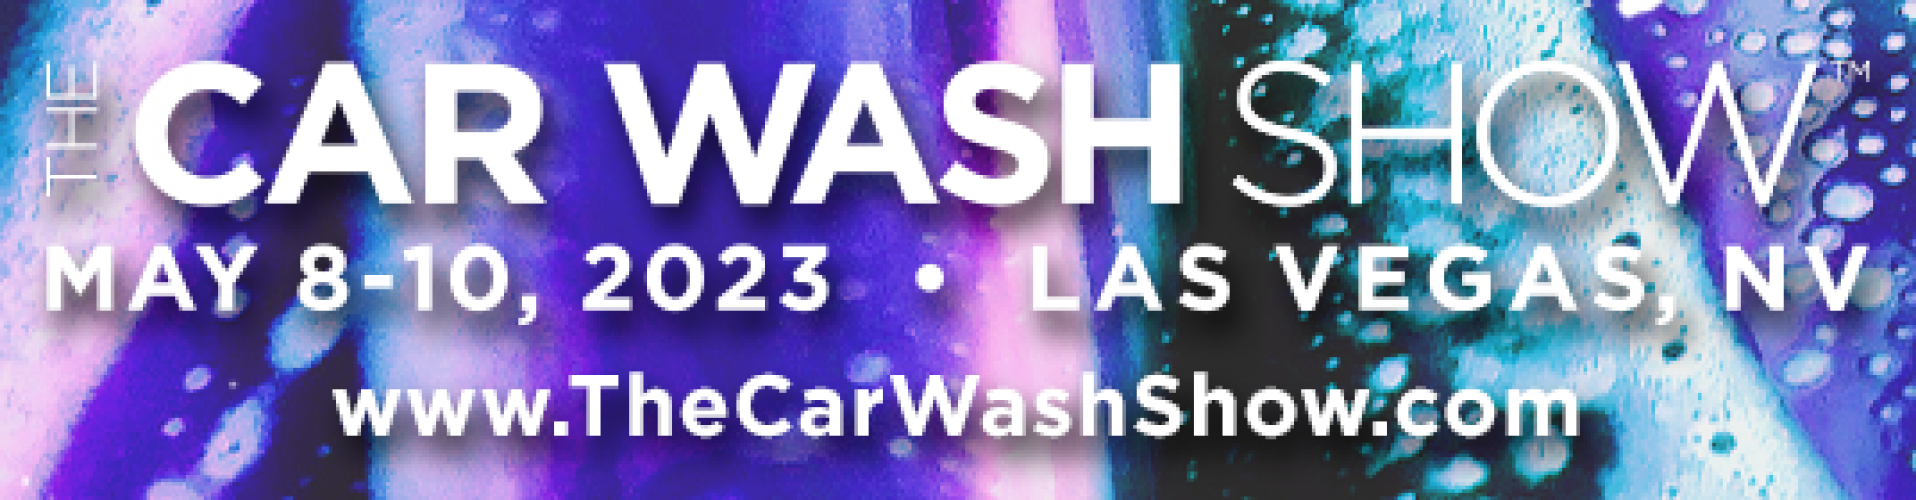 The Car Wash Show Exacta